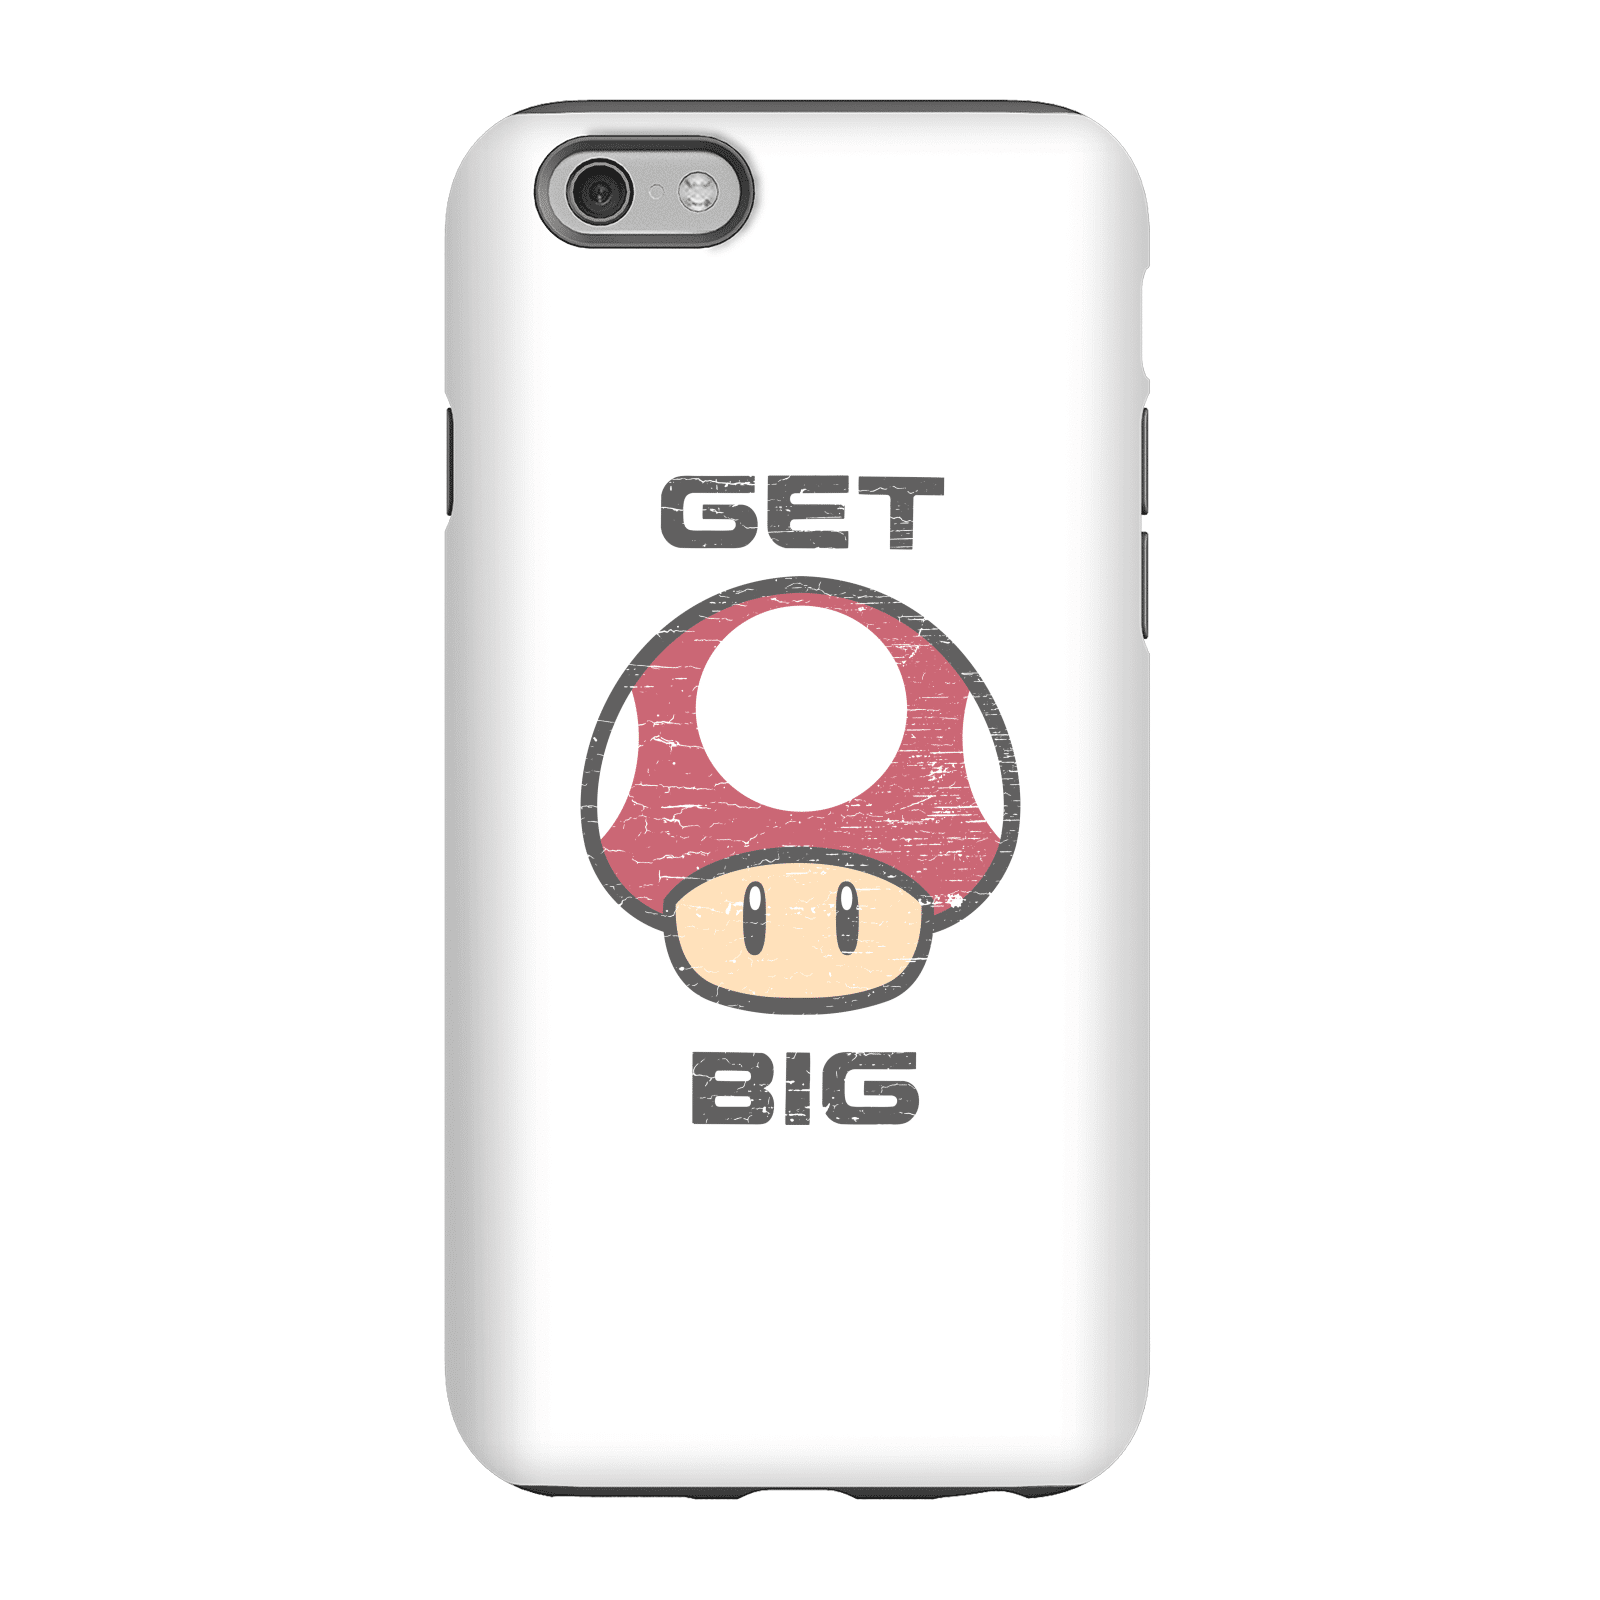 Nintendo Super Mario Get Big Mushroom Phone Case - iPhone 6 - Tough Case - Matte